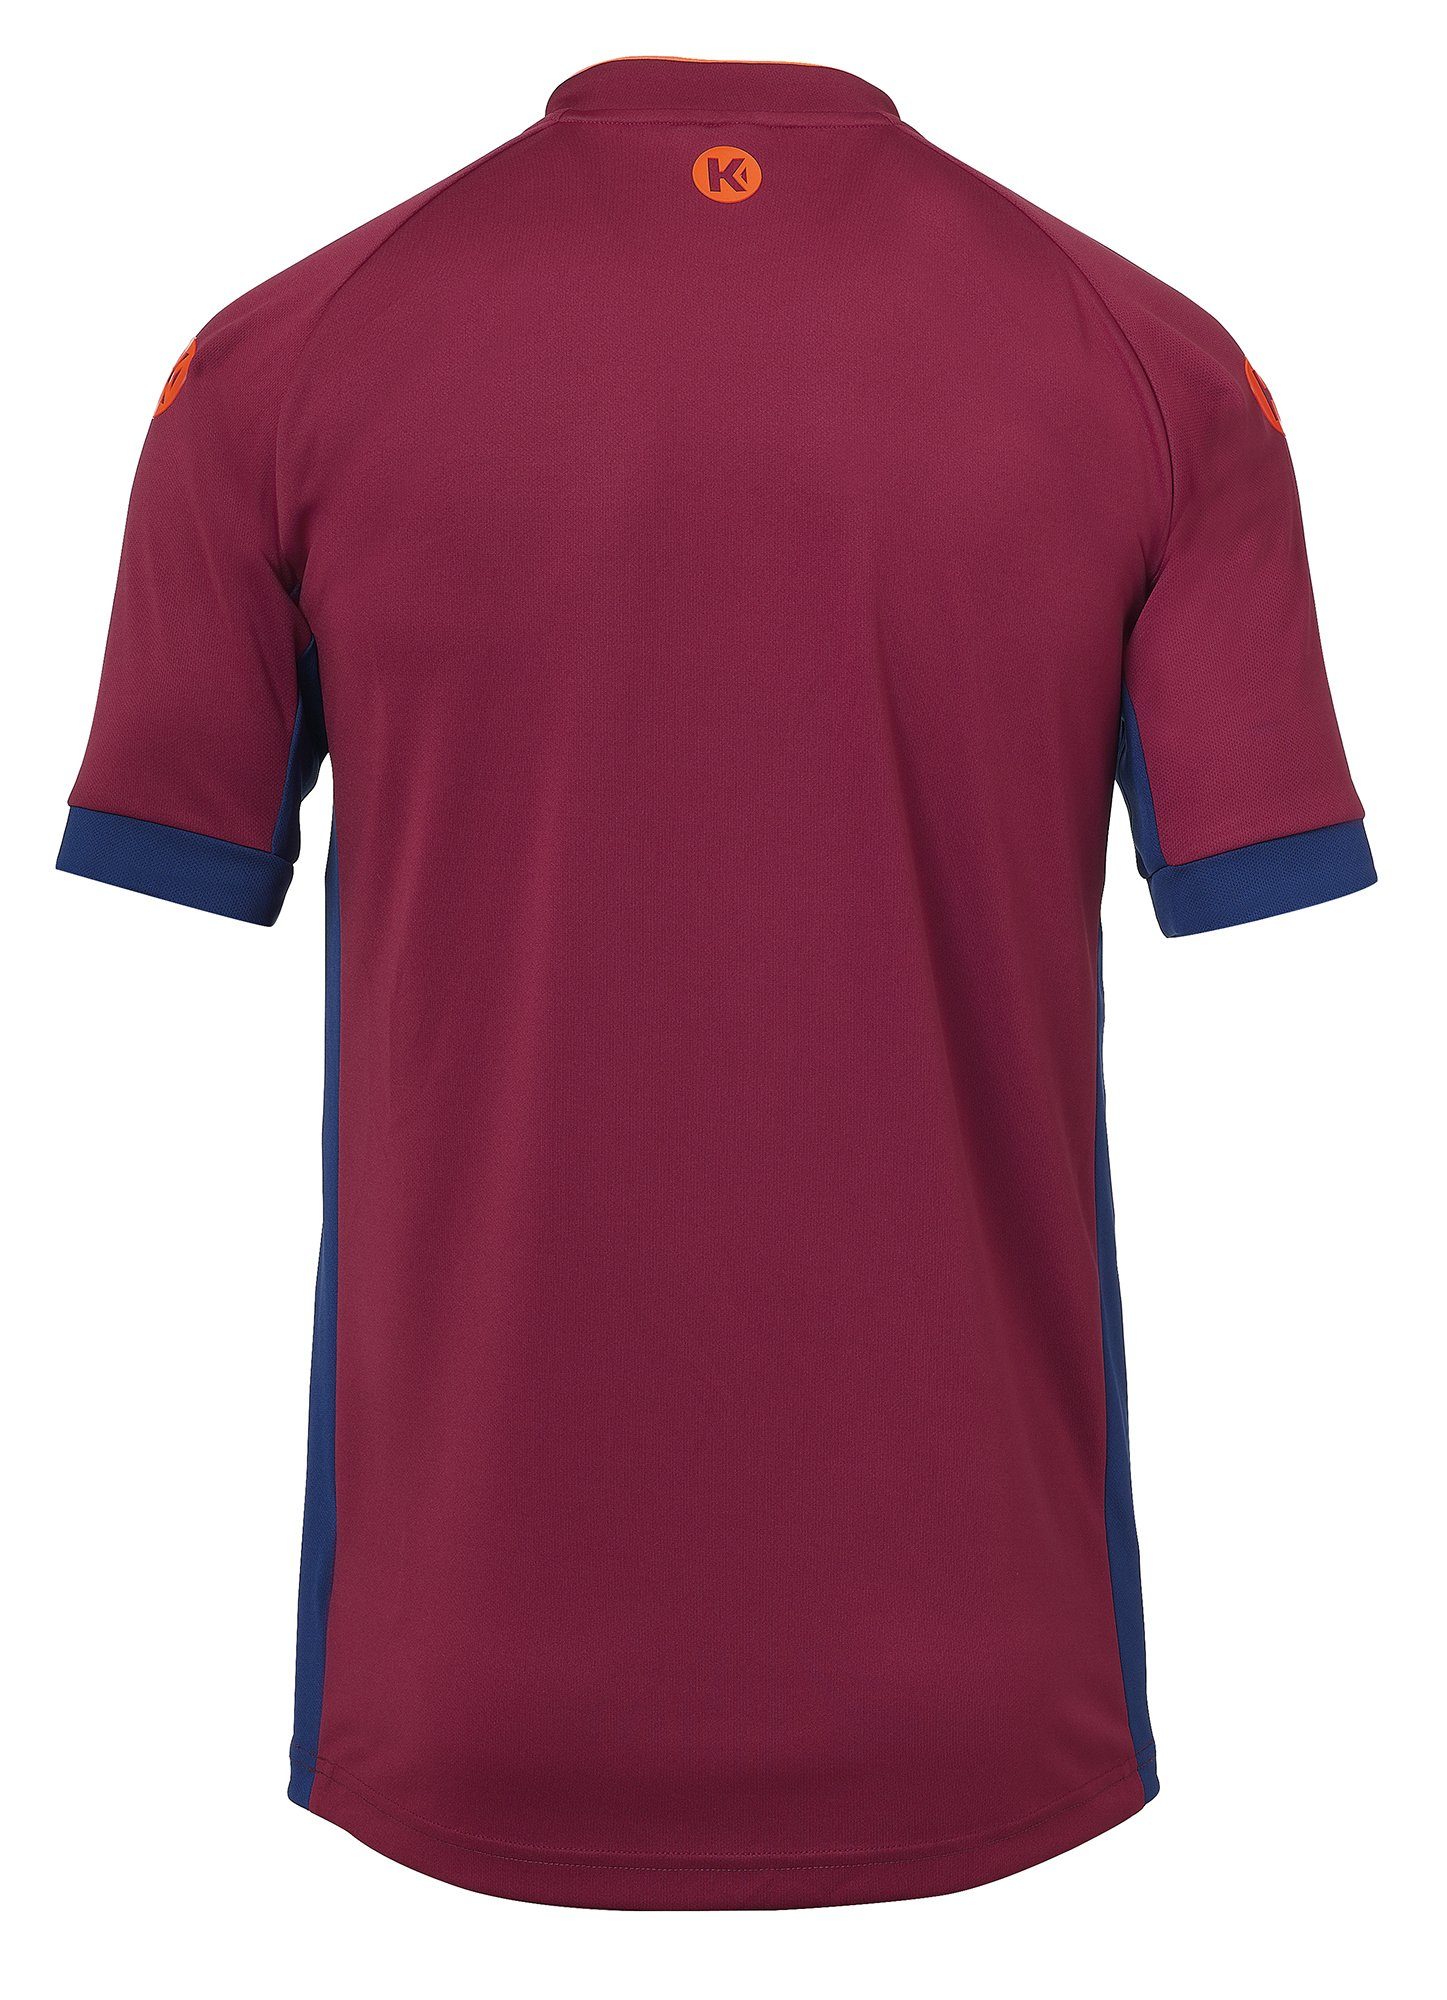 Kempa Trainingsshirt Kempa Shirt deep blau/deep TRIKOT schnelltrocknend PRIME rot